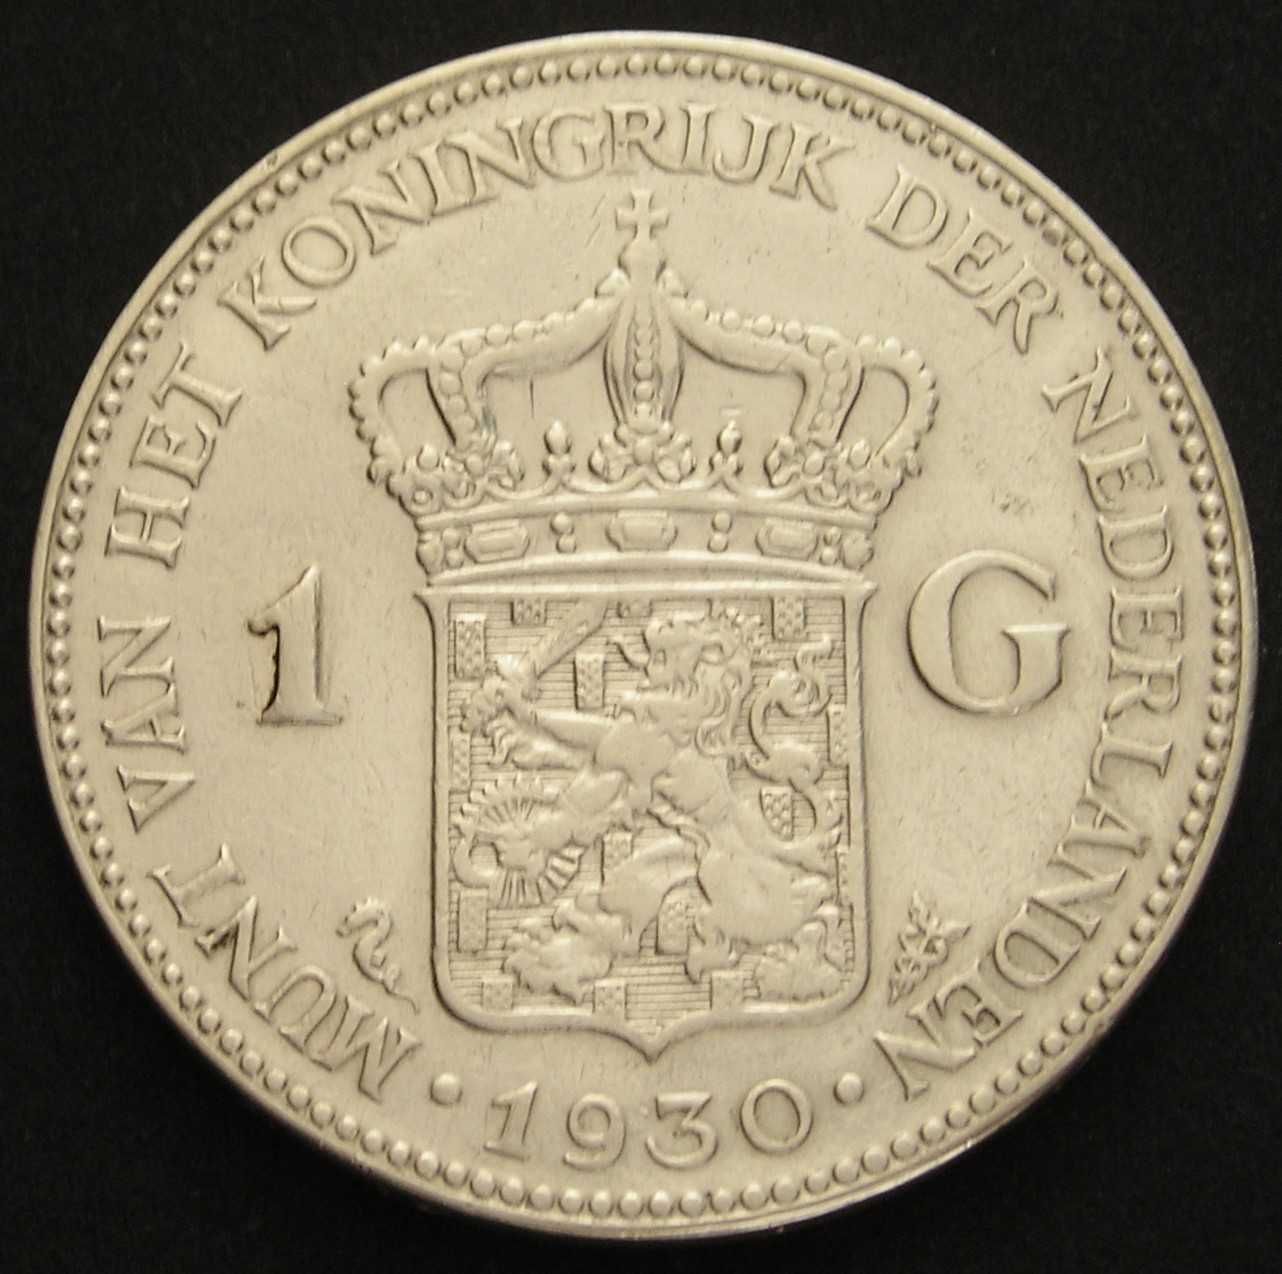 Holandia 1 gulden 1930 - królowa Wilhelmina - srebro